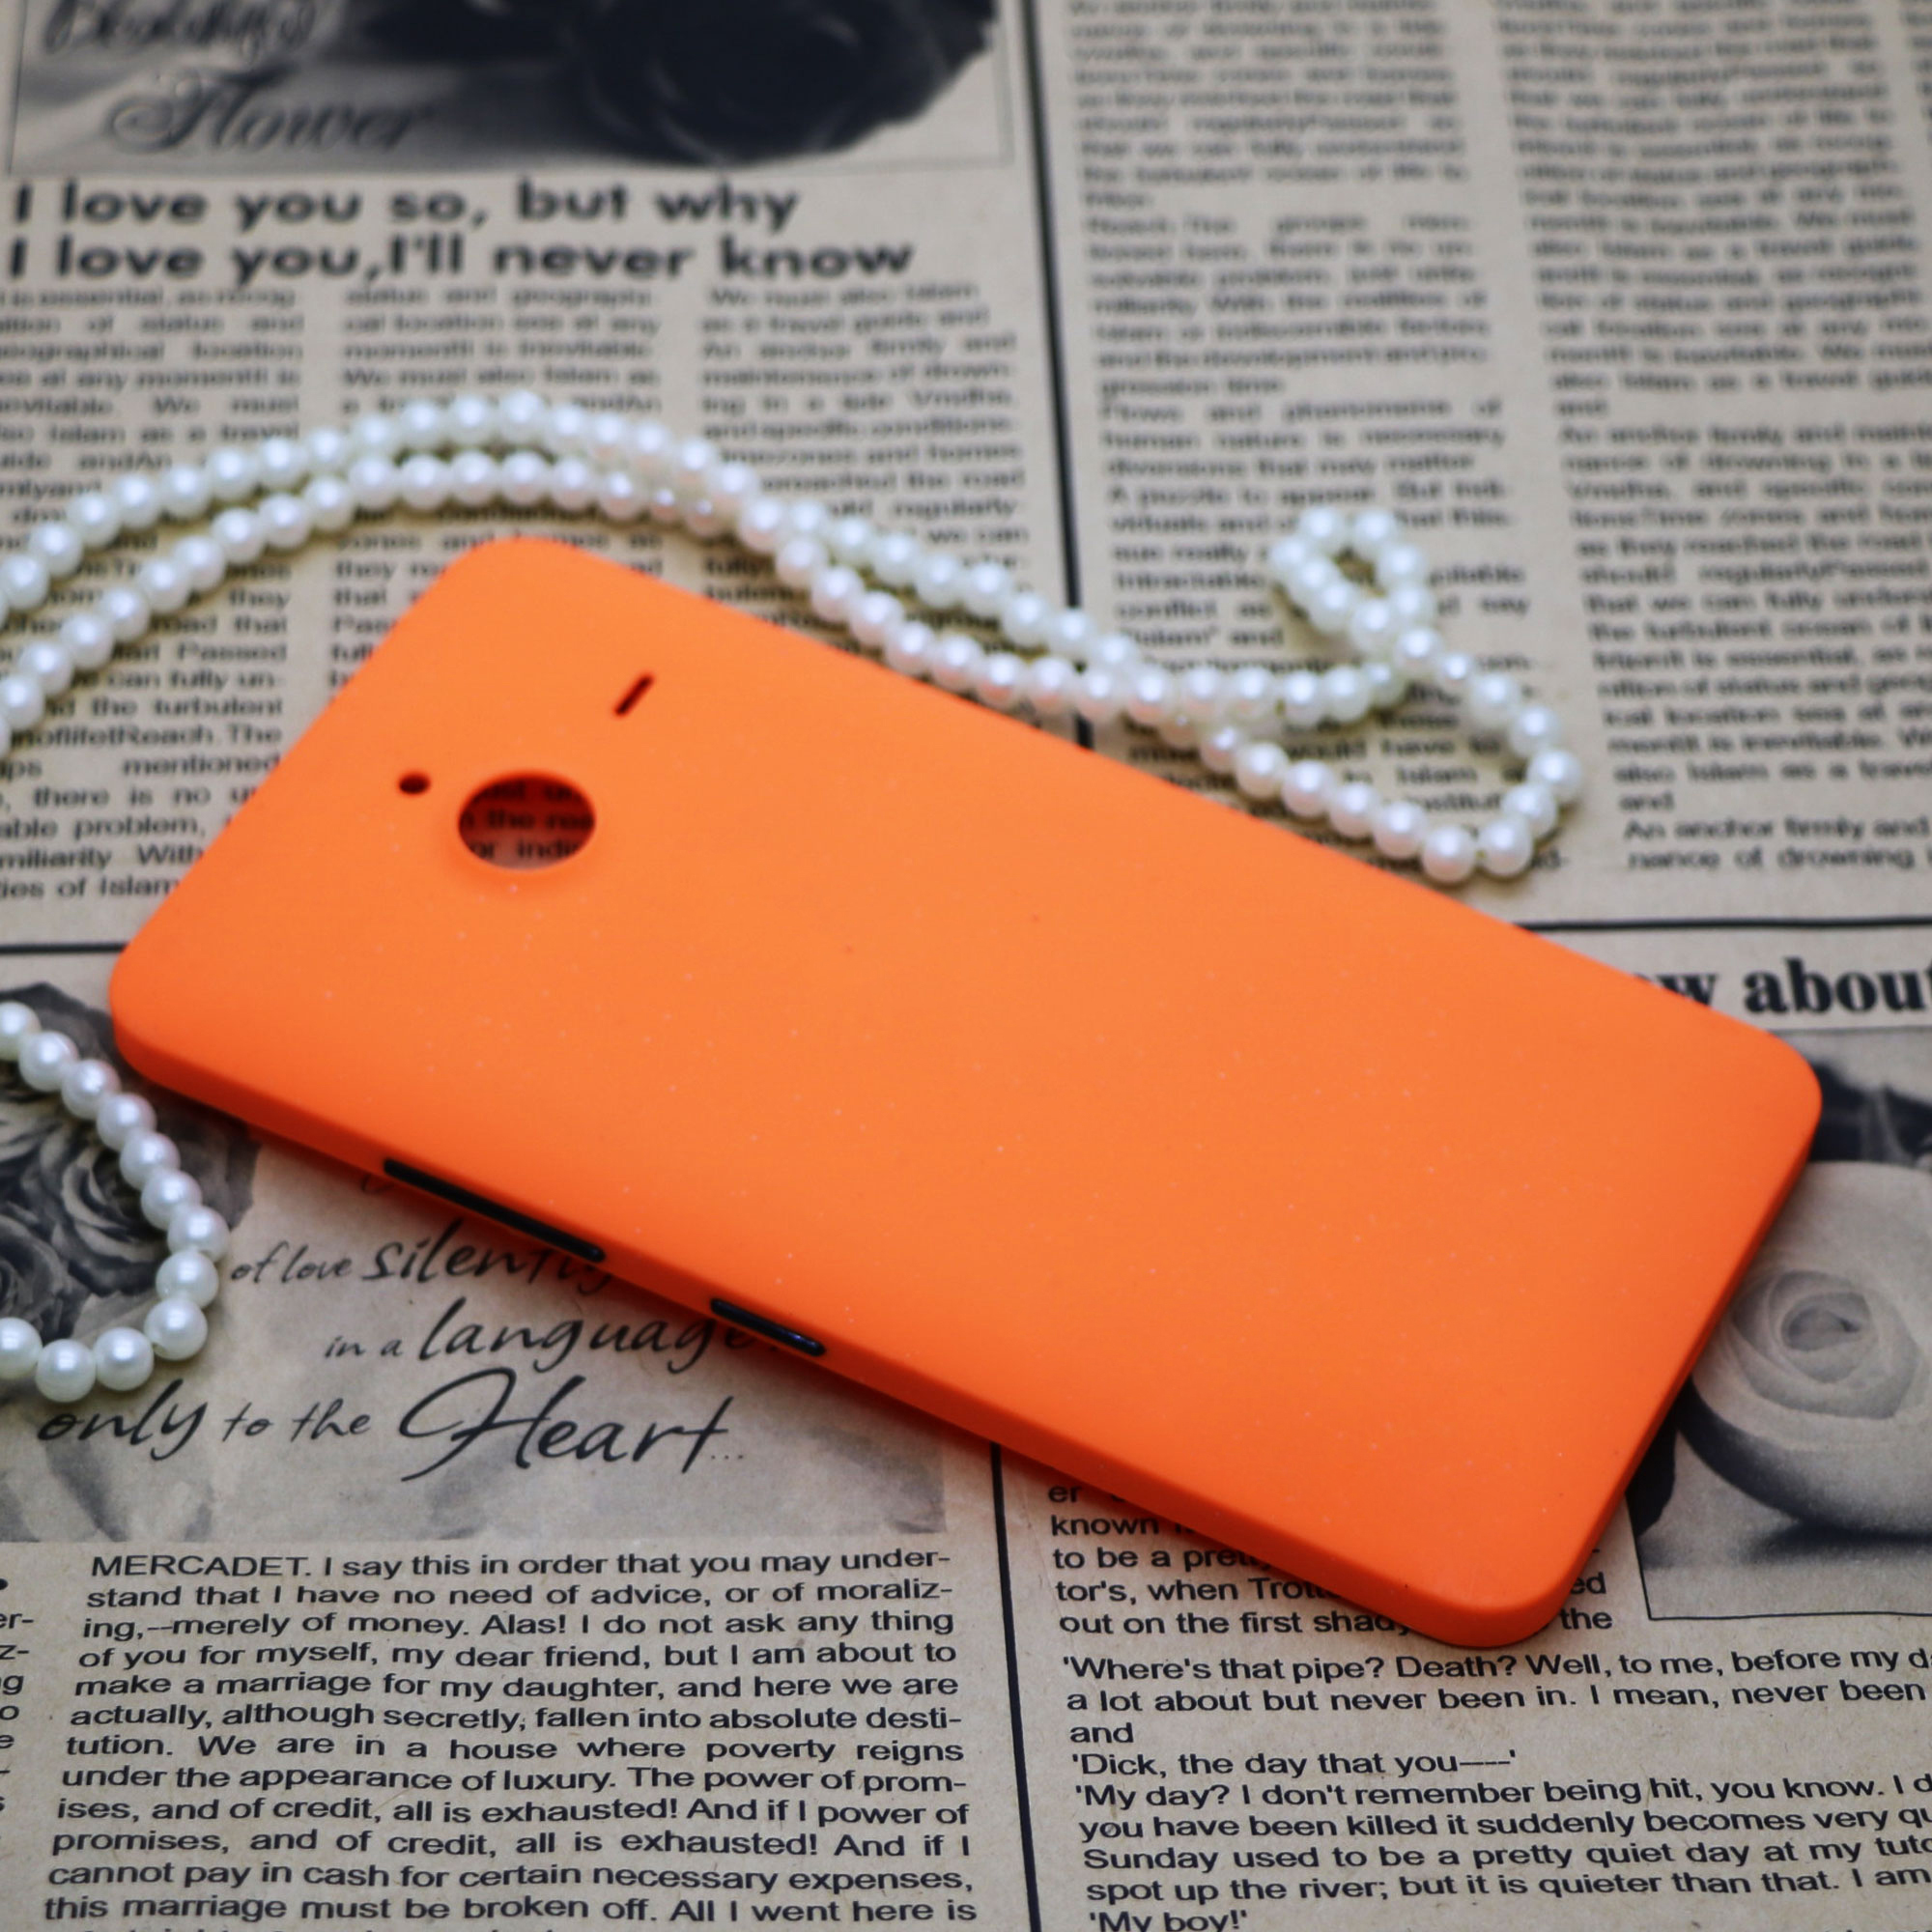 در پشت گوشی مدل BK-01 مناسب برای گوشی موبایل مایکروسافت Lumia 640XL